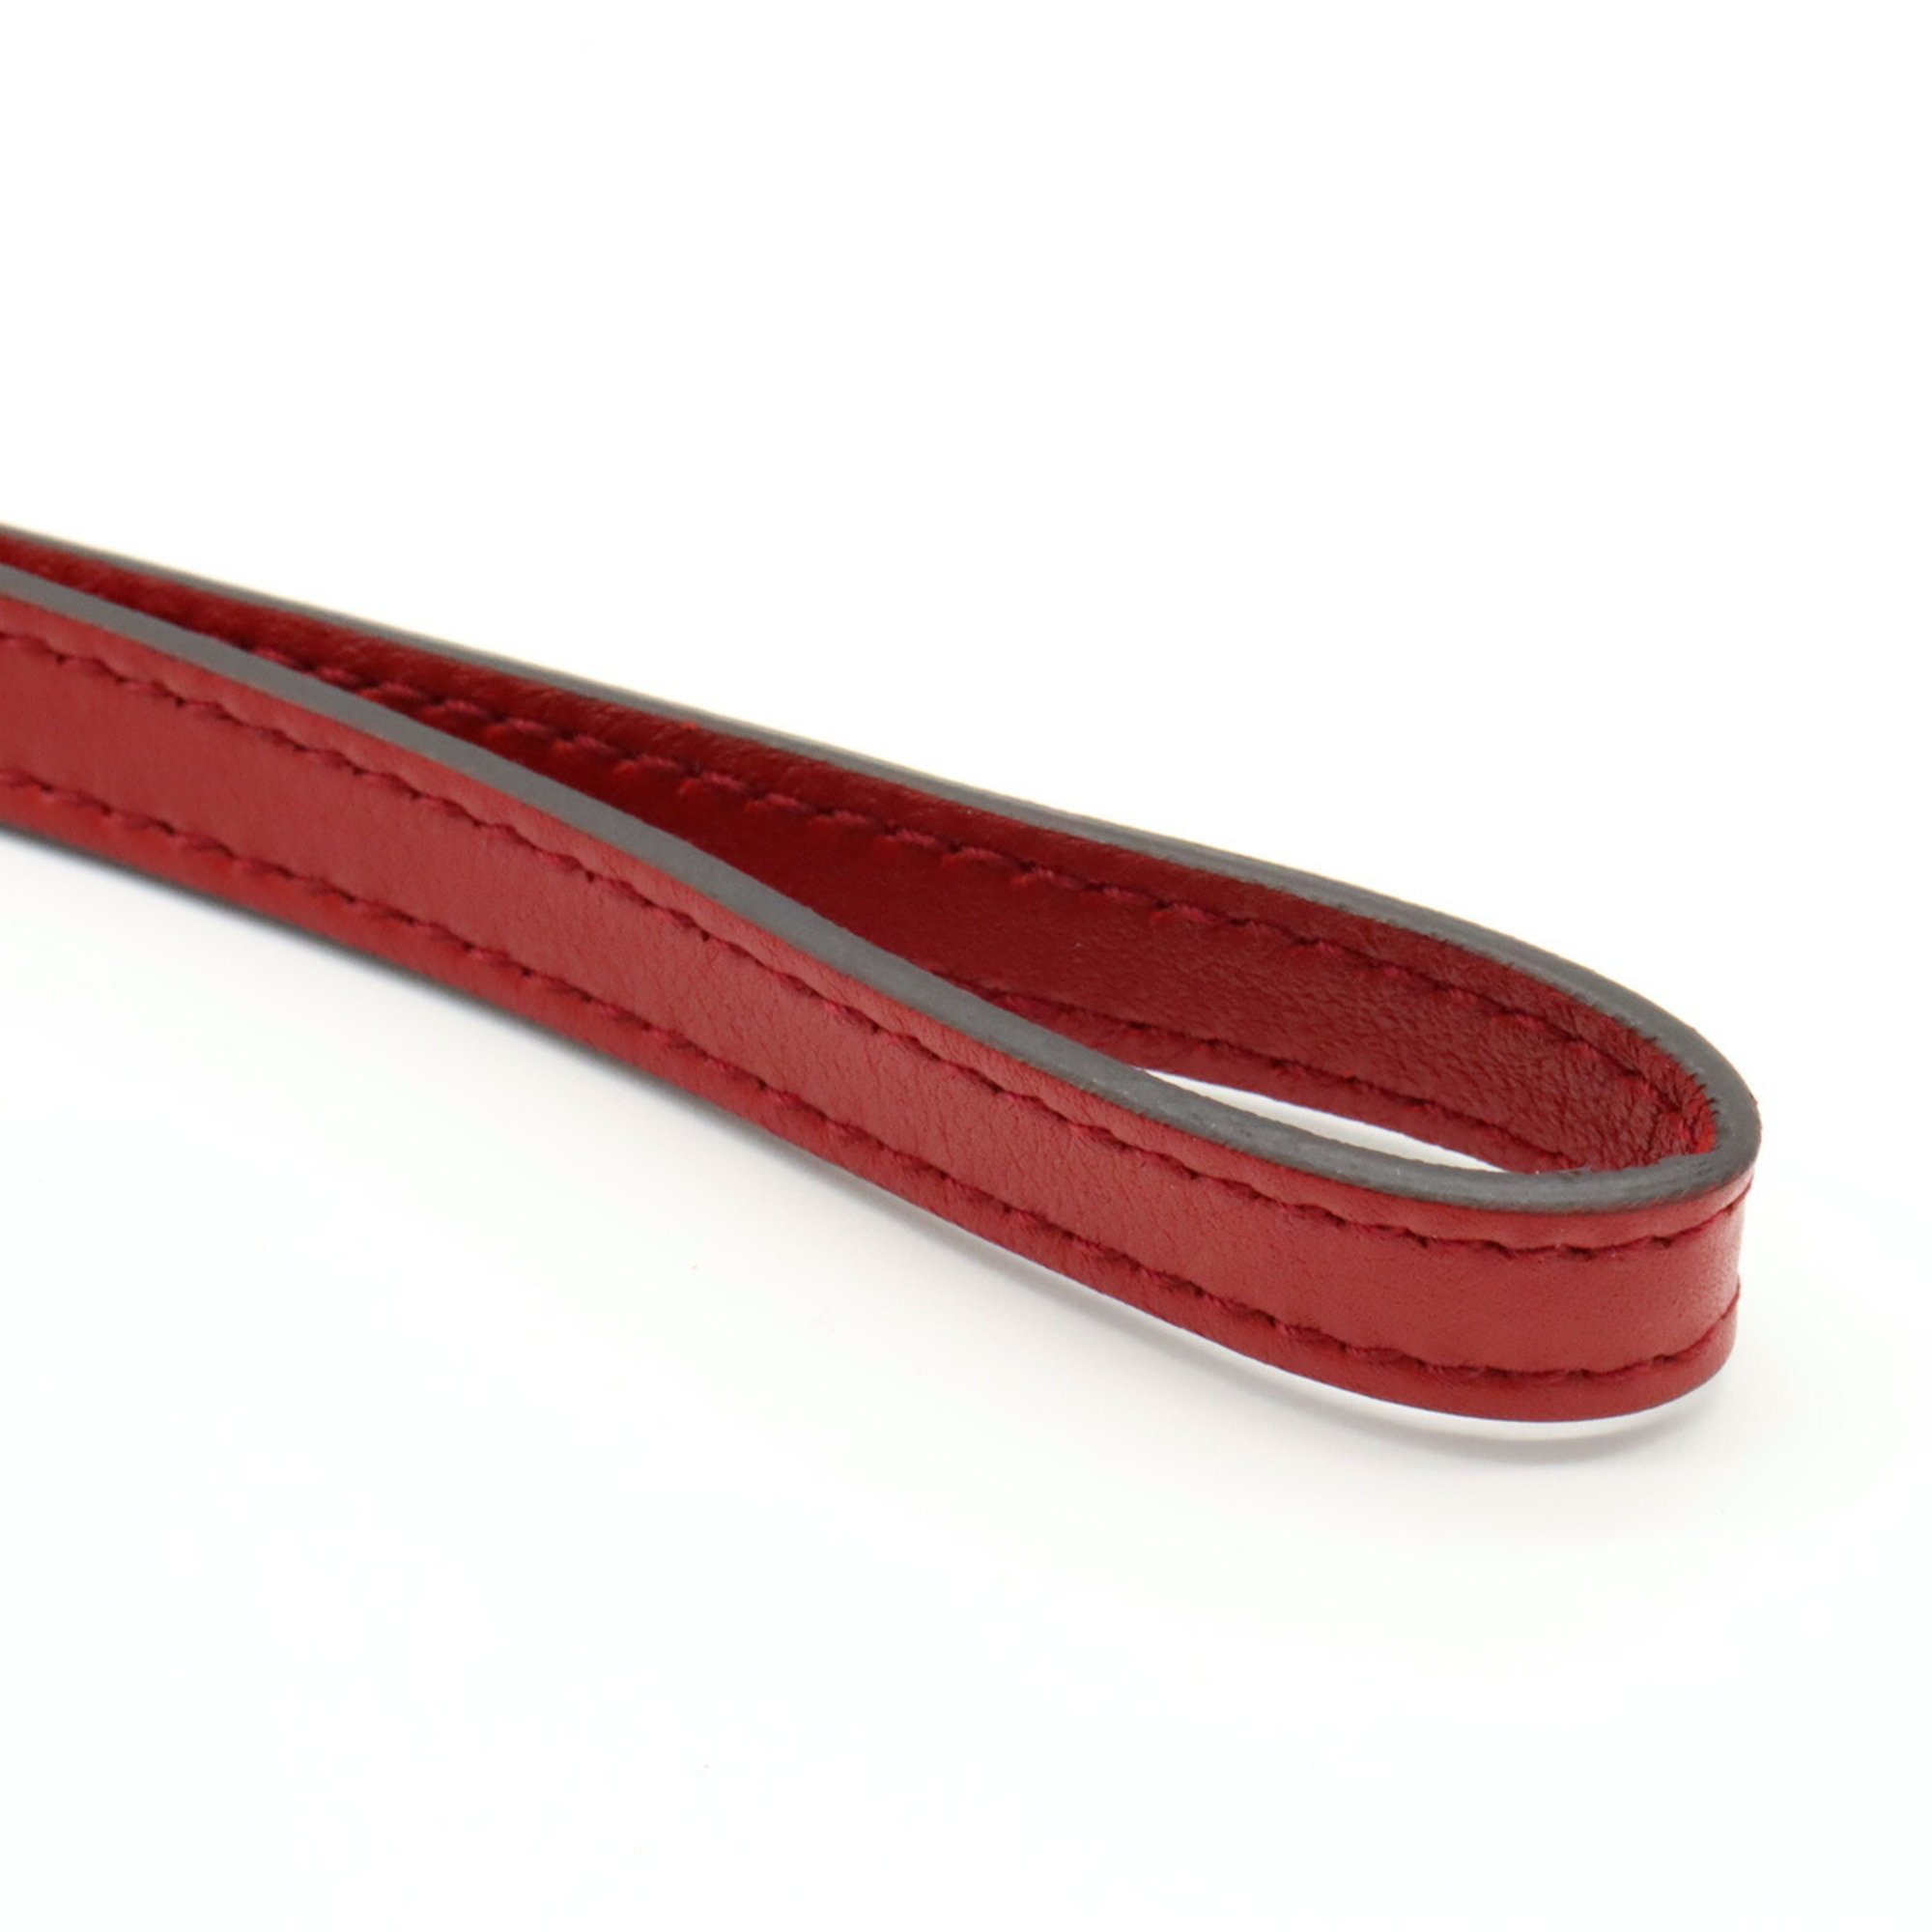 GUCCI Guccisima Pouch Multi Leather Red 212203